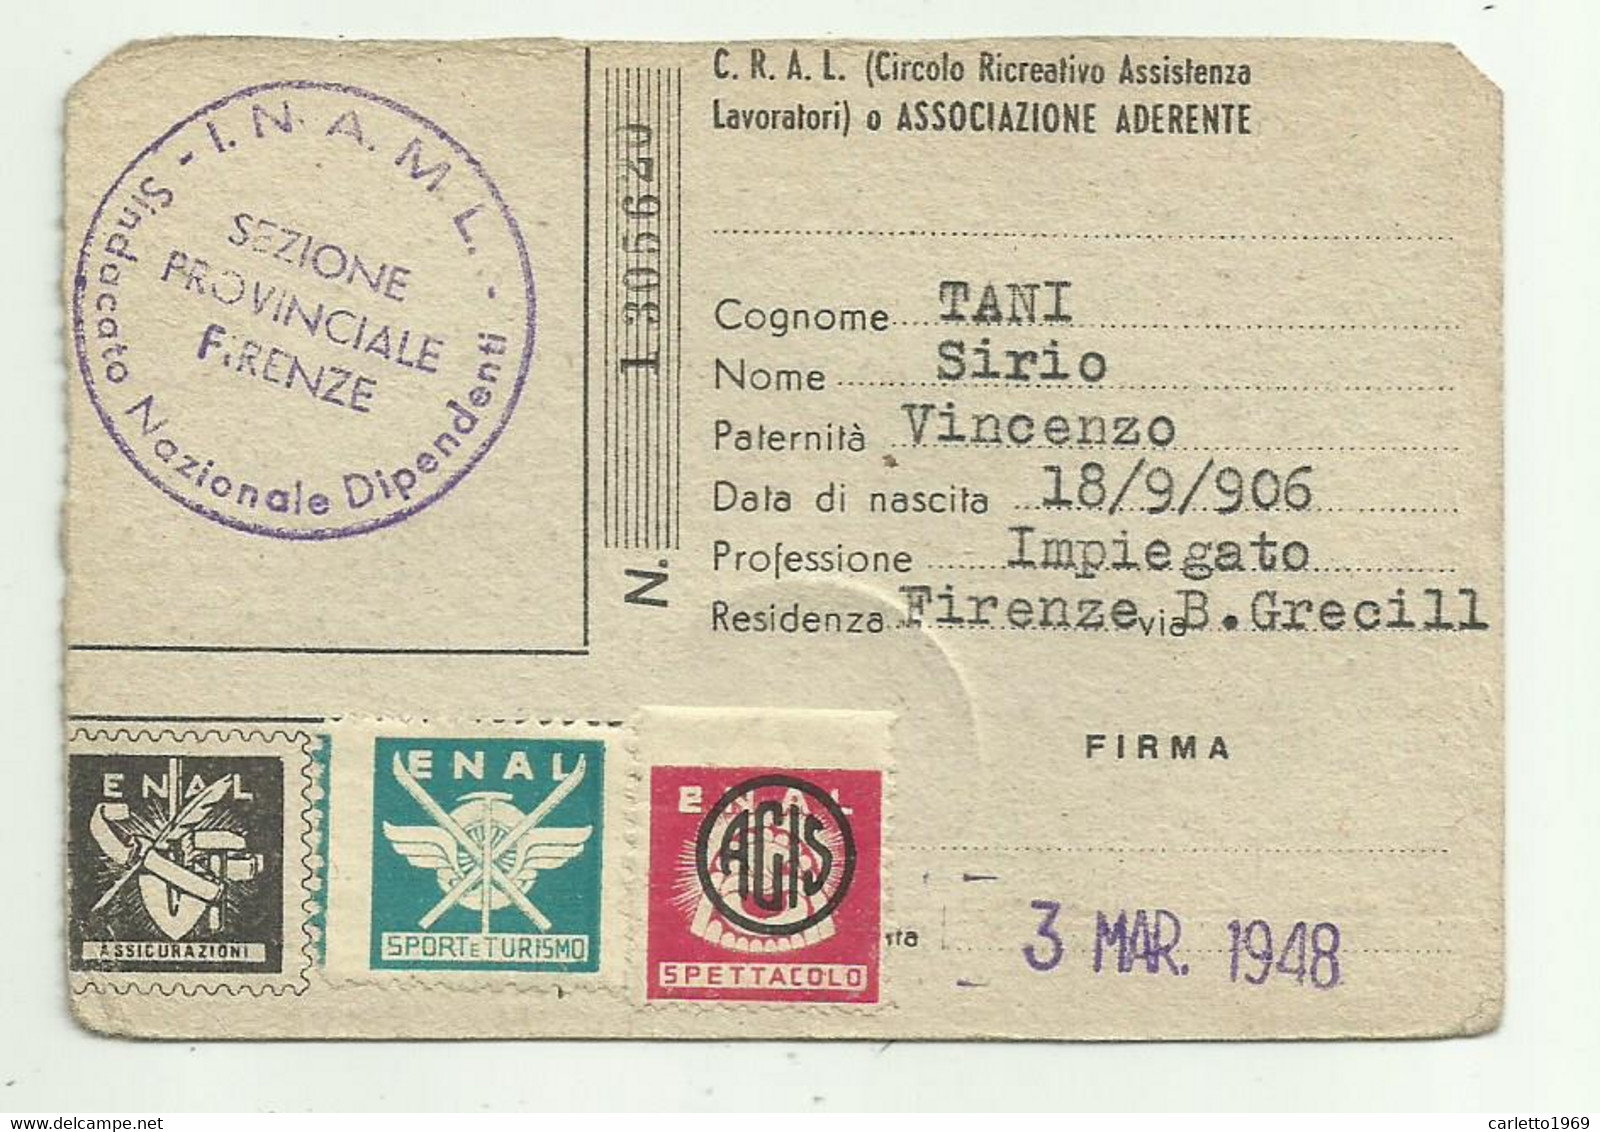 TESSERA ENTE NAZIONALE ASSISTENZA LAVORATORI  - FIRENZE 1948 - Collections